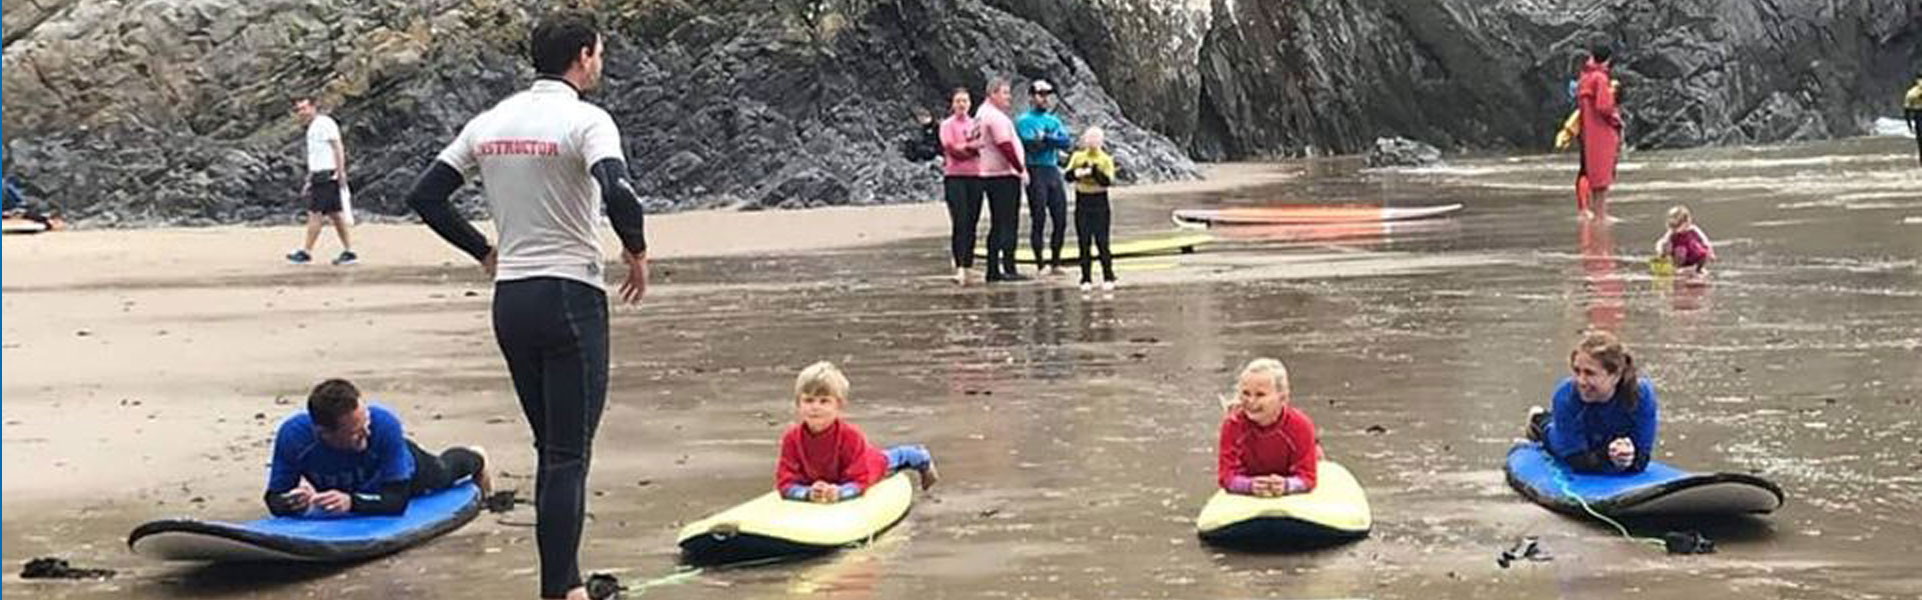 Kids surf session